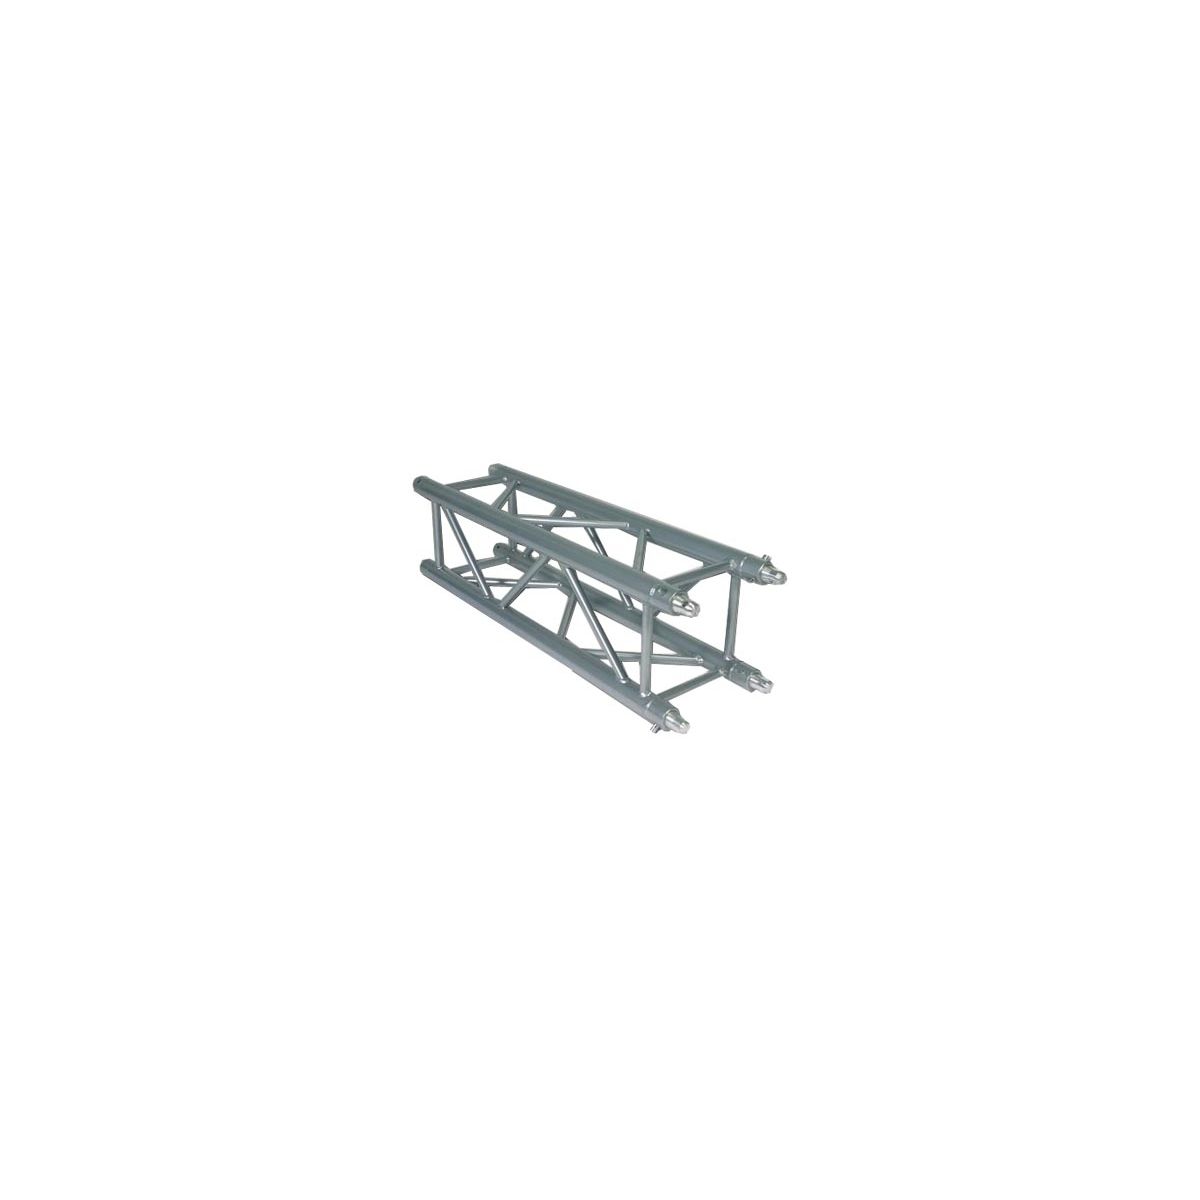 Structures aluminium - Mobiltruss - QUATRO 40110